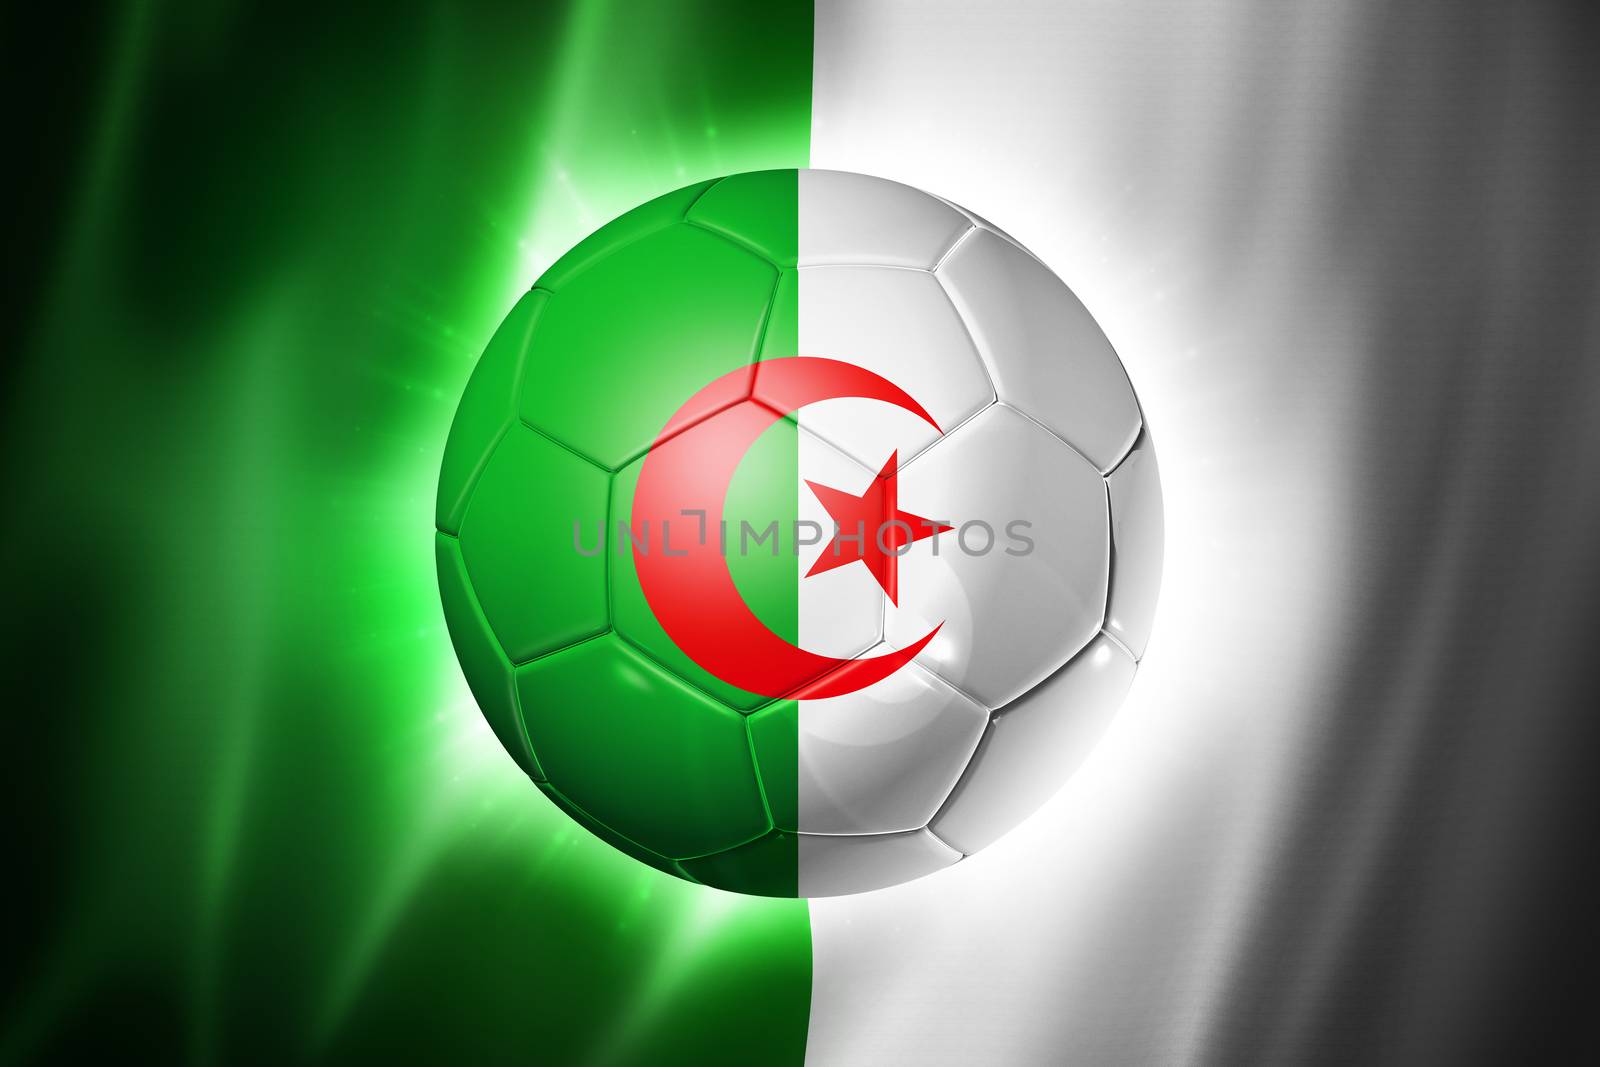 3D soccer ball with Algeria team flag, world football cup Brazil 2014